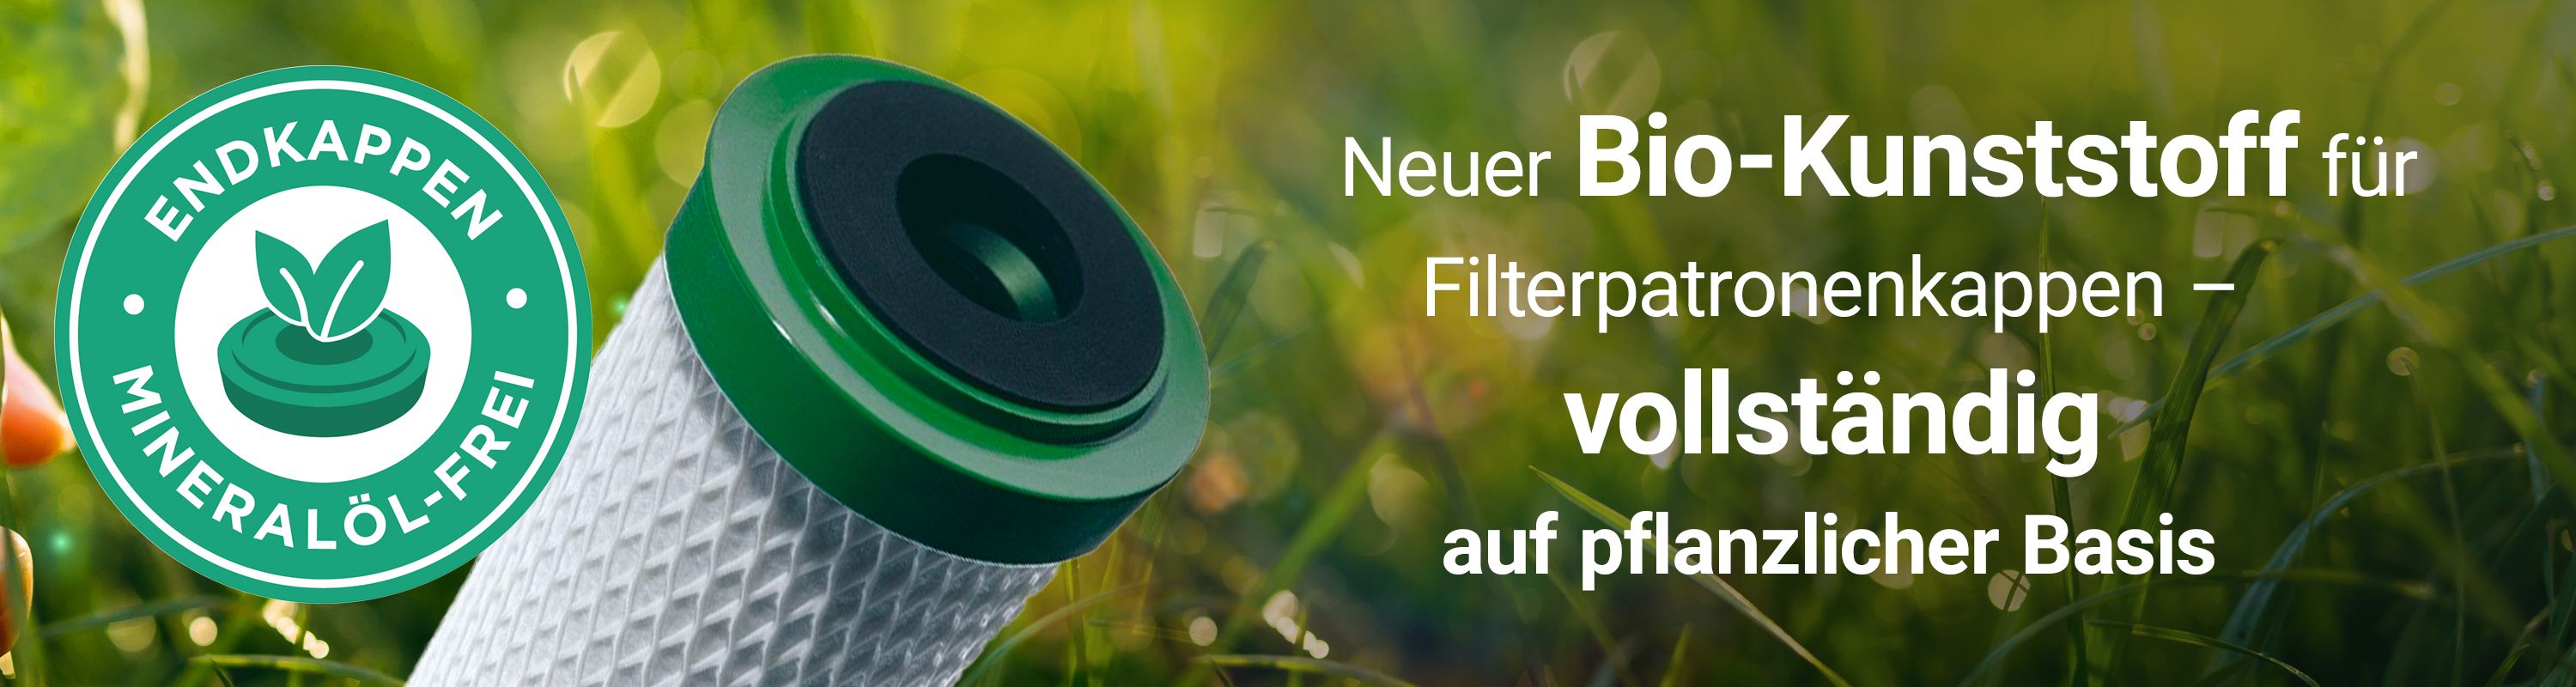 Neuer BIO-Kunststoff für Filterpatronenkappen